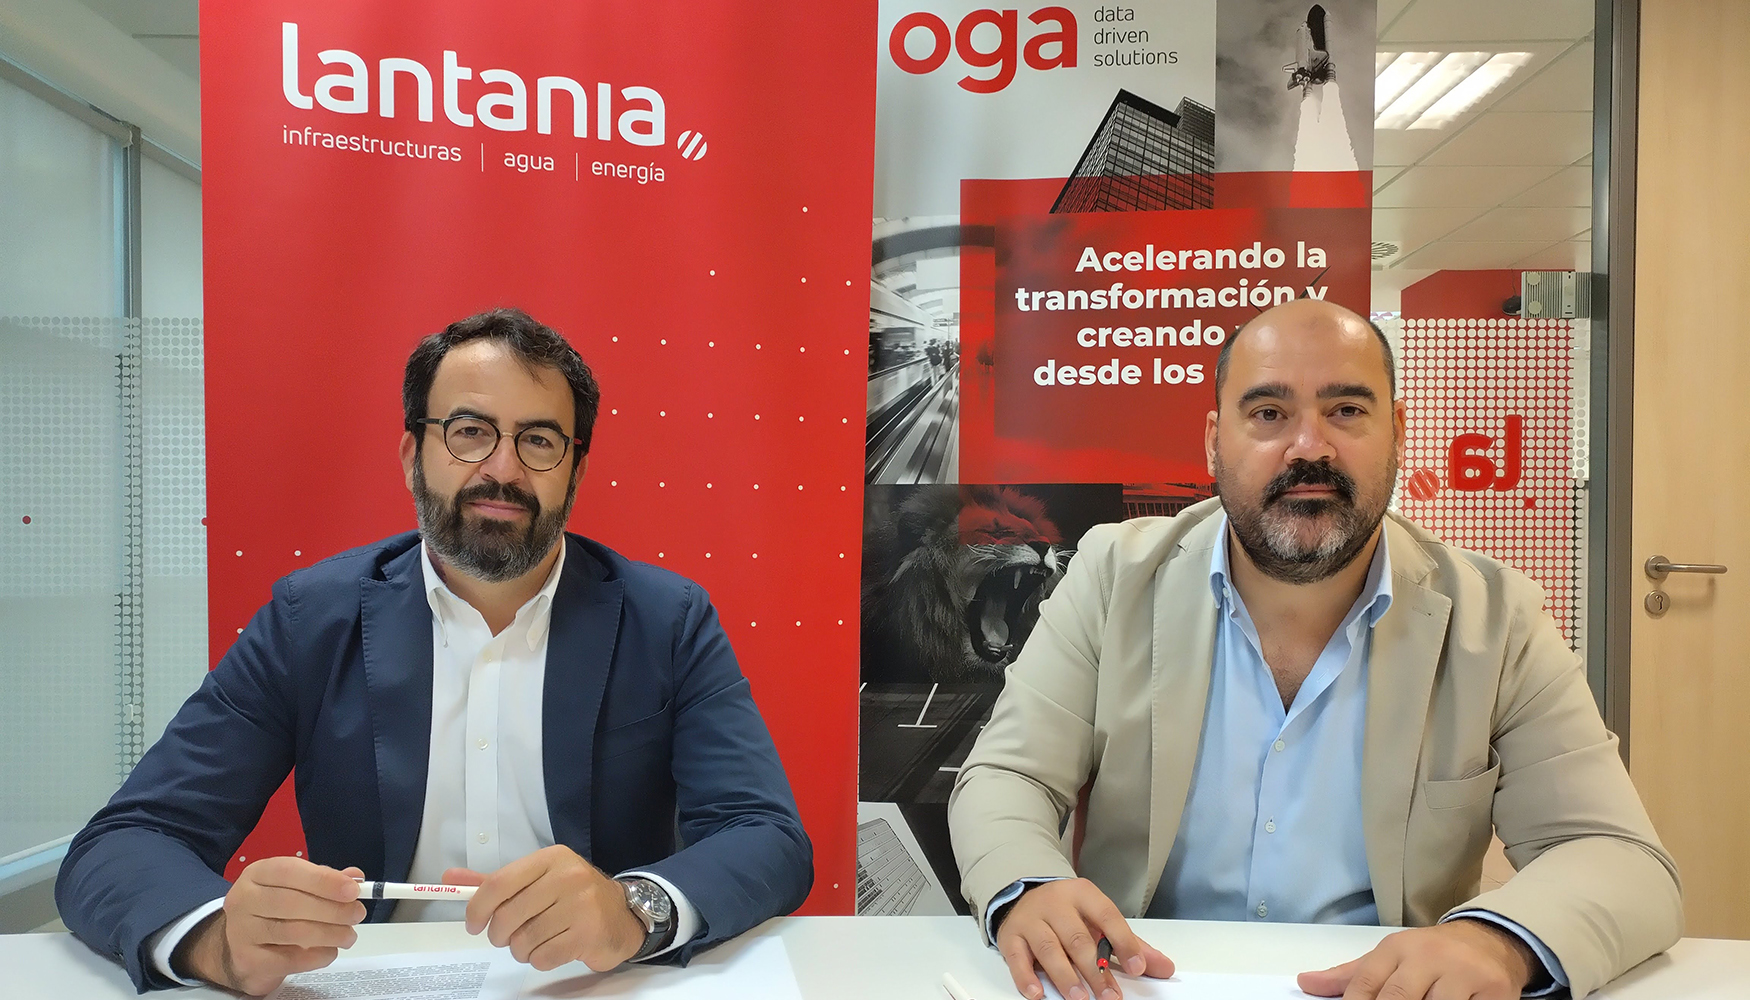 El director de Lantania Aguas, Pedro Almagro junto al CEO de Oga, Juan Carlos Rubio